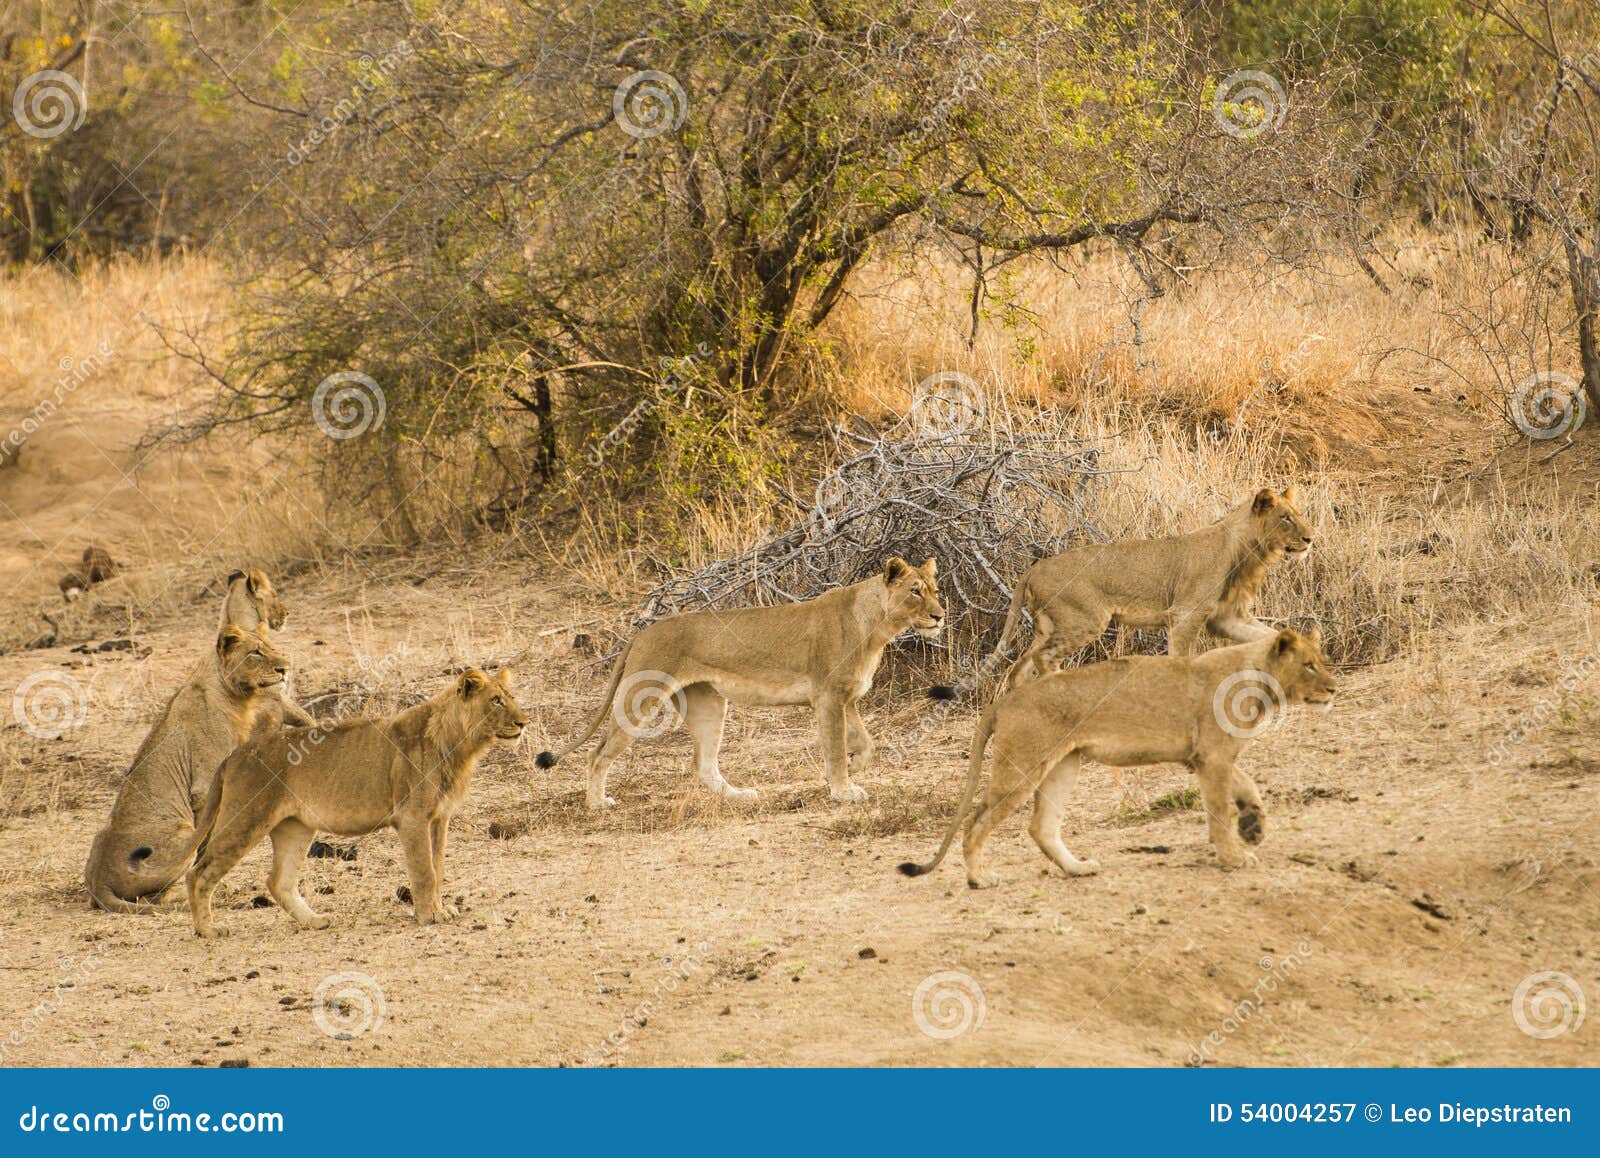 фотографии львов на охоте